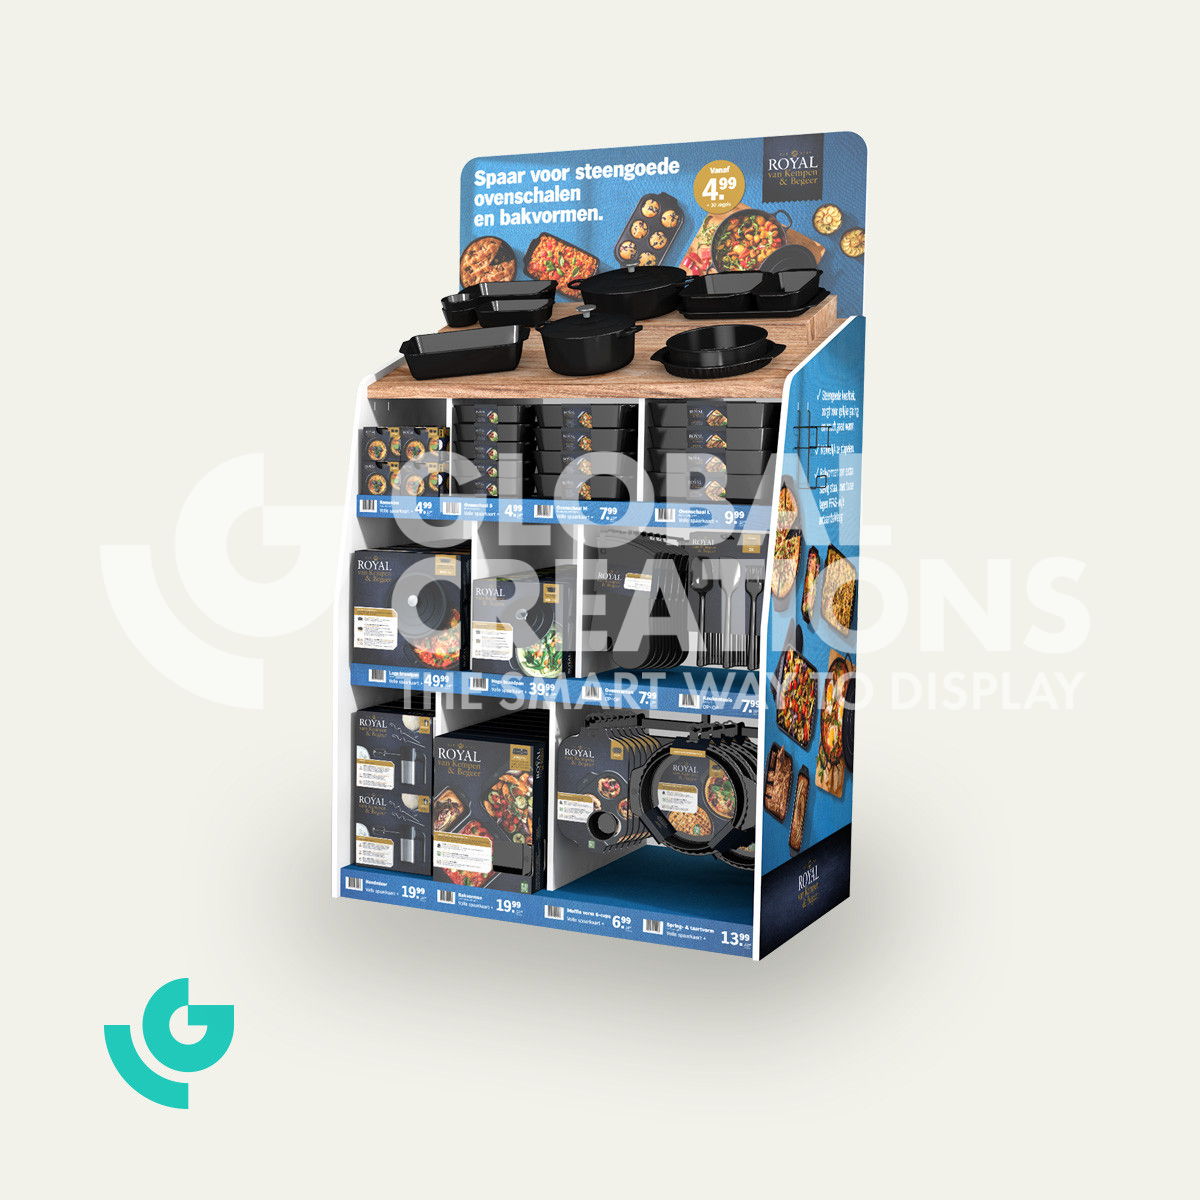 Honeycomb cardboard floor displays - baking products (0136)